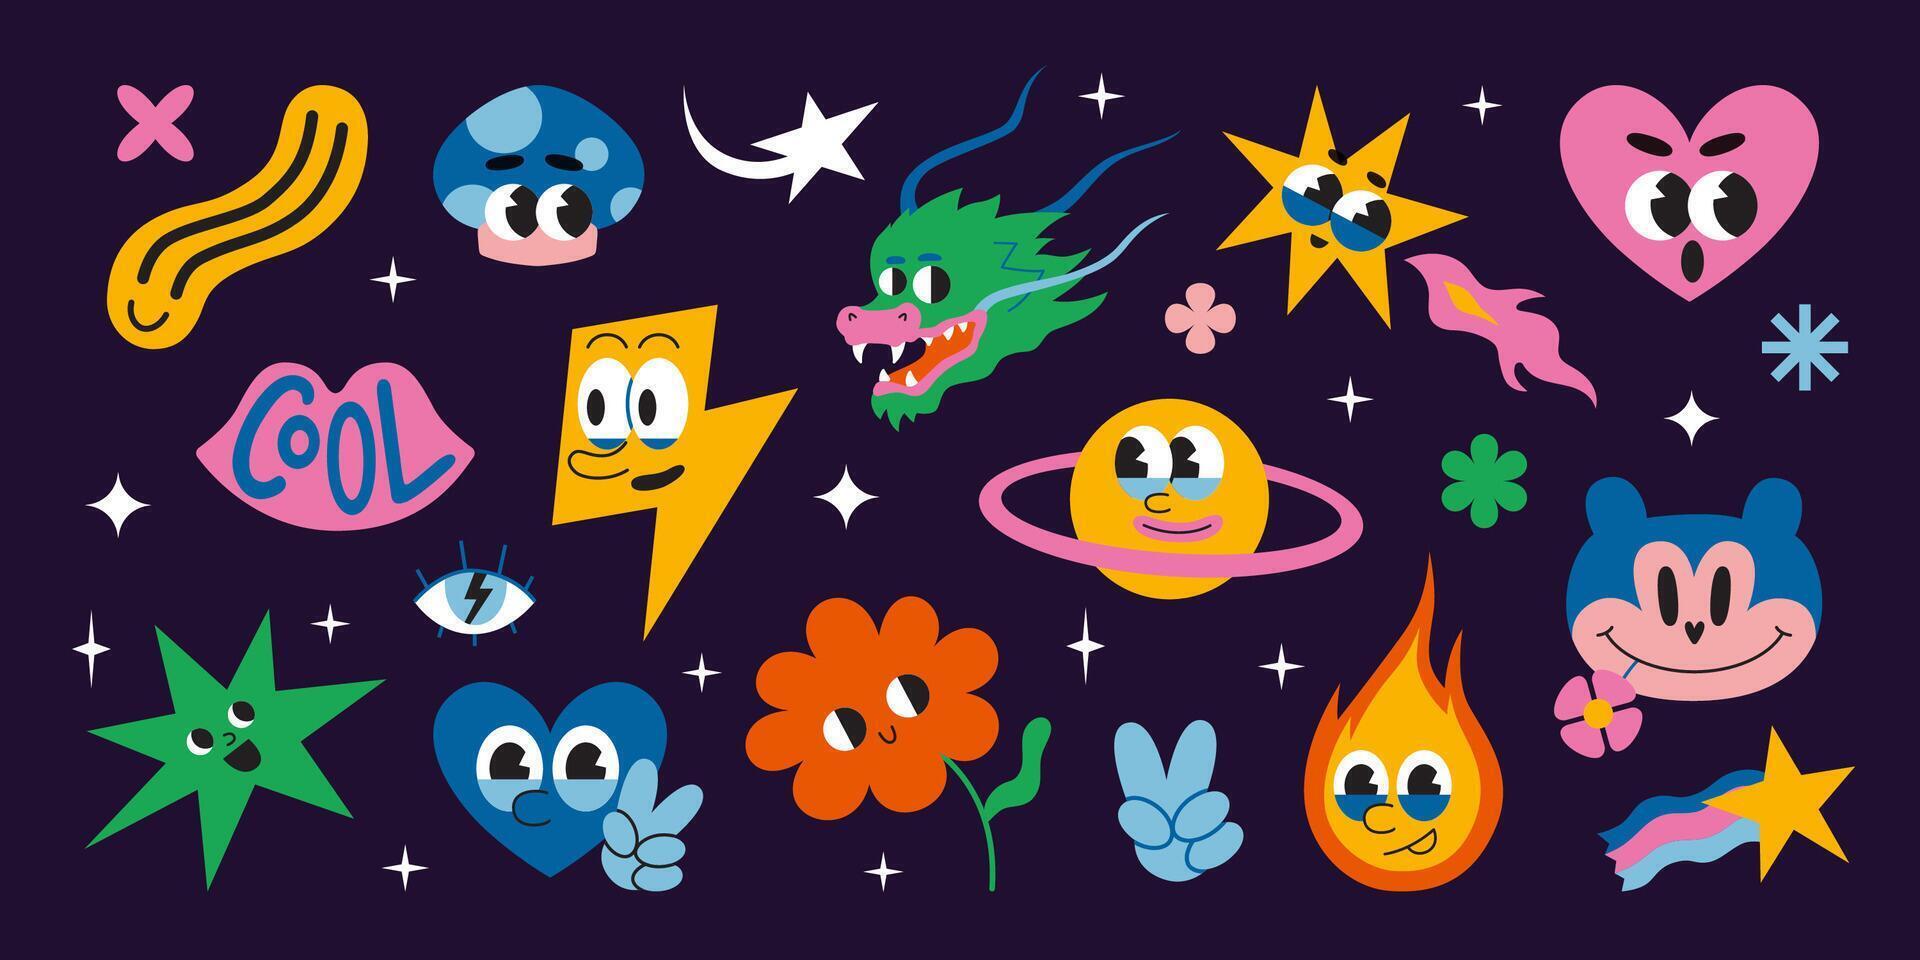 reeks van divers grappig groovy tekens zo net zo hart, bloem en sterren in ruimte, tekenfilm stijl. jaren 70 grappig schattig retro stickers verzameling. modieus modern illustratie, hand- getrokken, vlak ontwerp vector